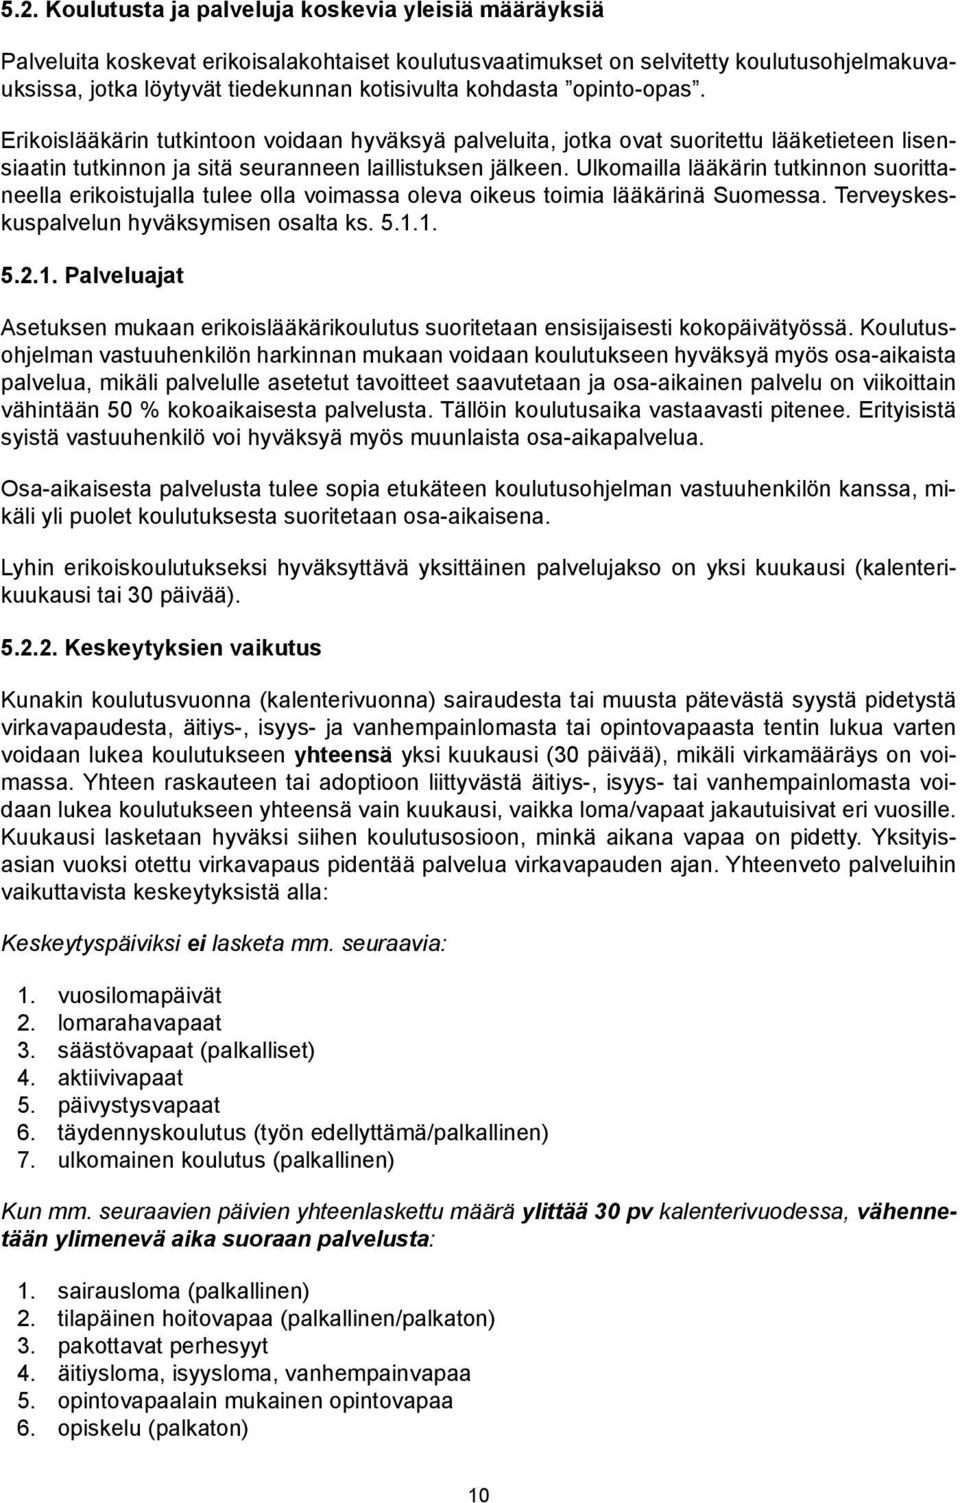 Ulkomailla lääkärin tutkinnon suorittaneella erikoistujalla tulee olla voimassa oleva oikeus toimia lääkärinä Suomessa. Terveyskeskuspalvelun hyväksymisen osalta ks. 5.1.